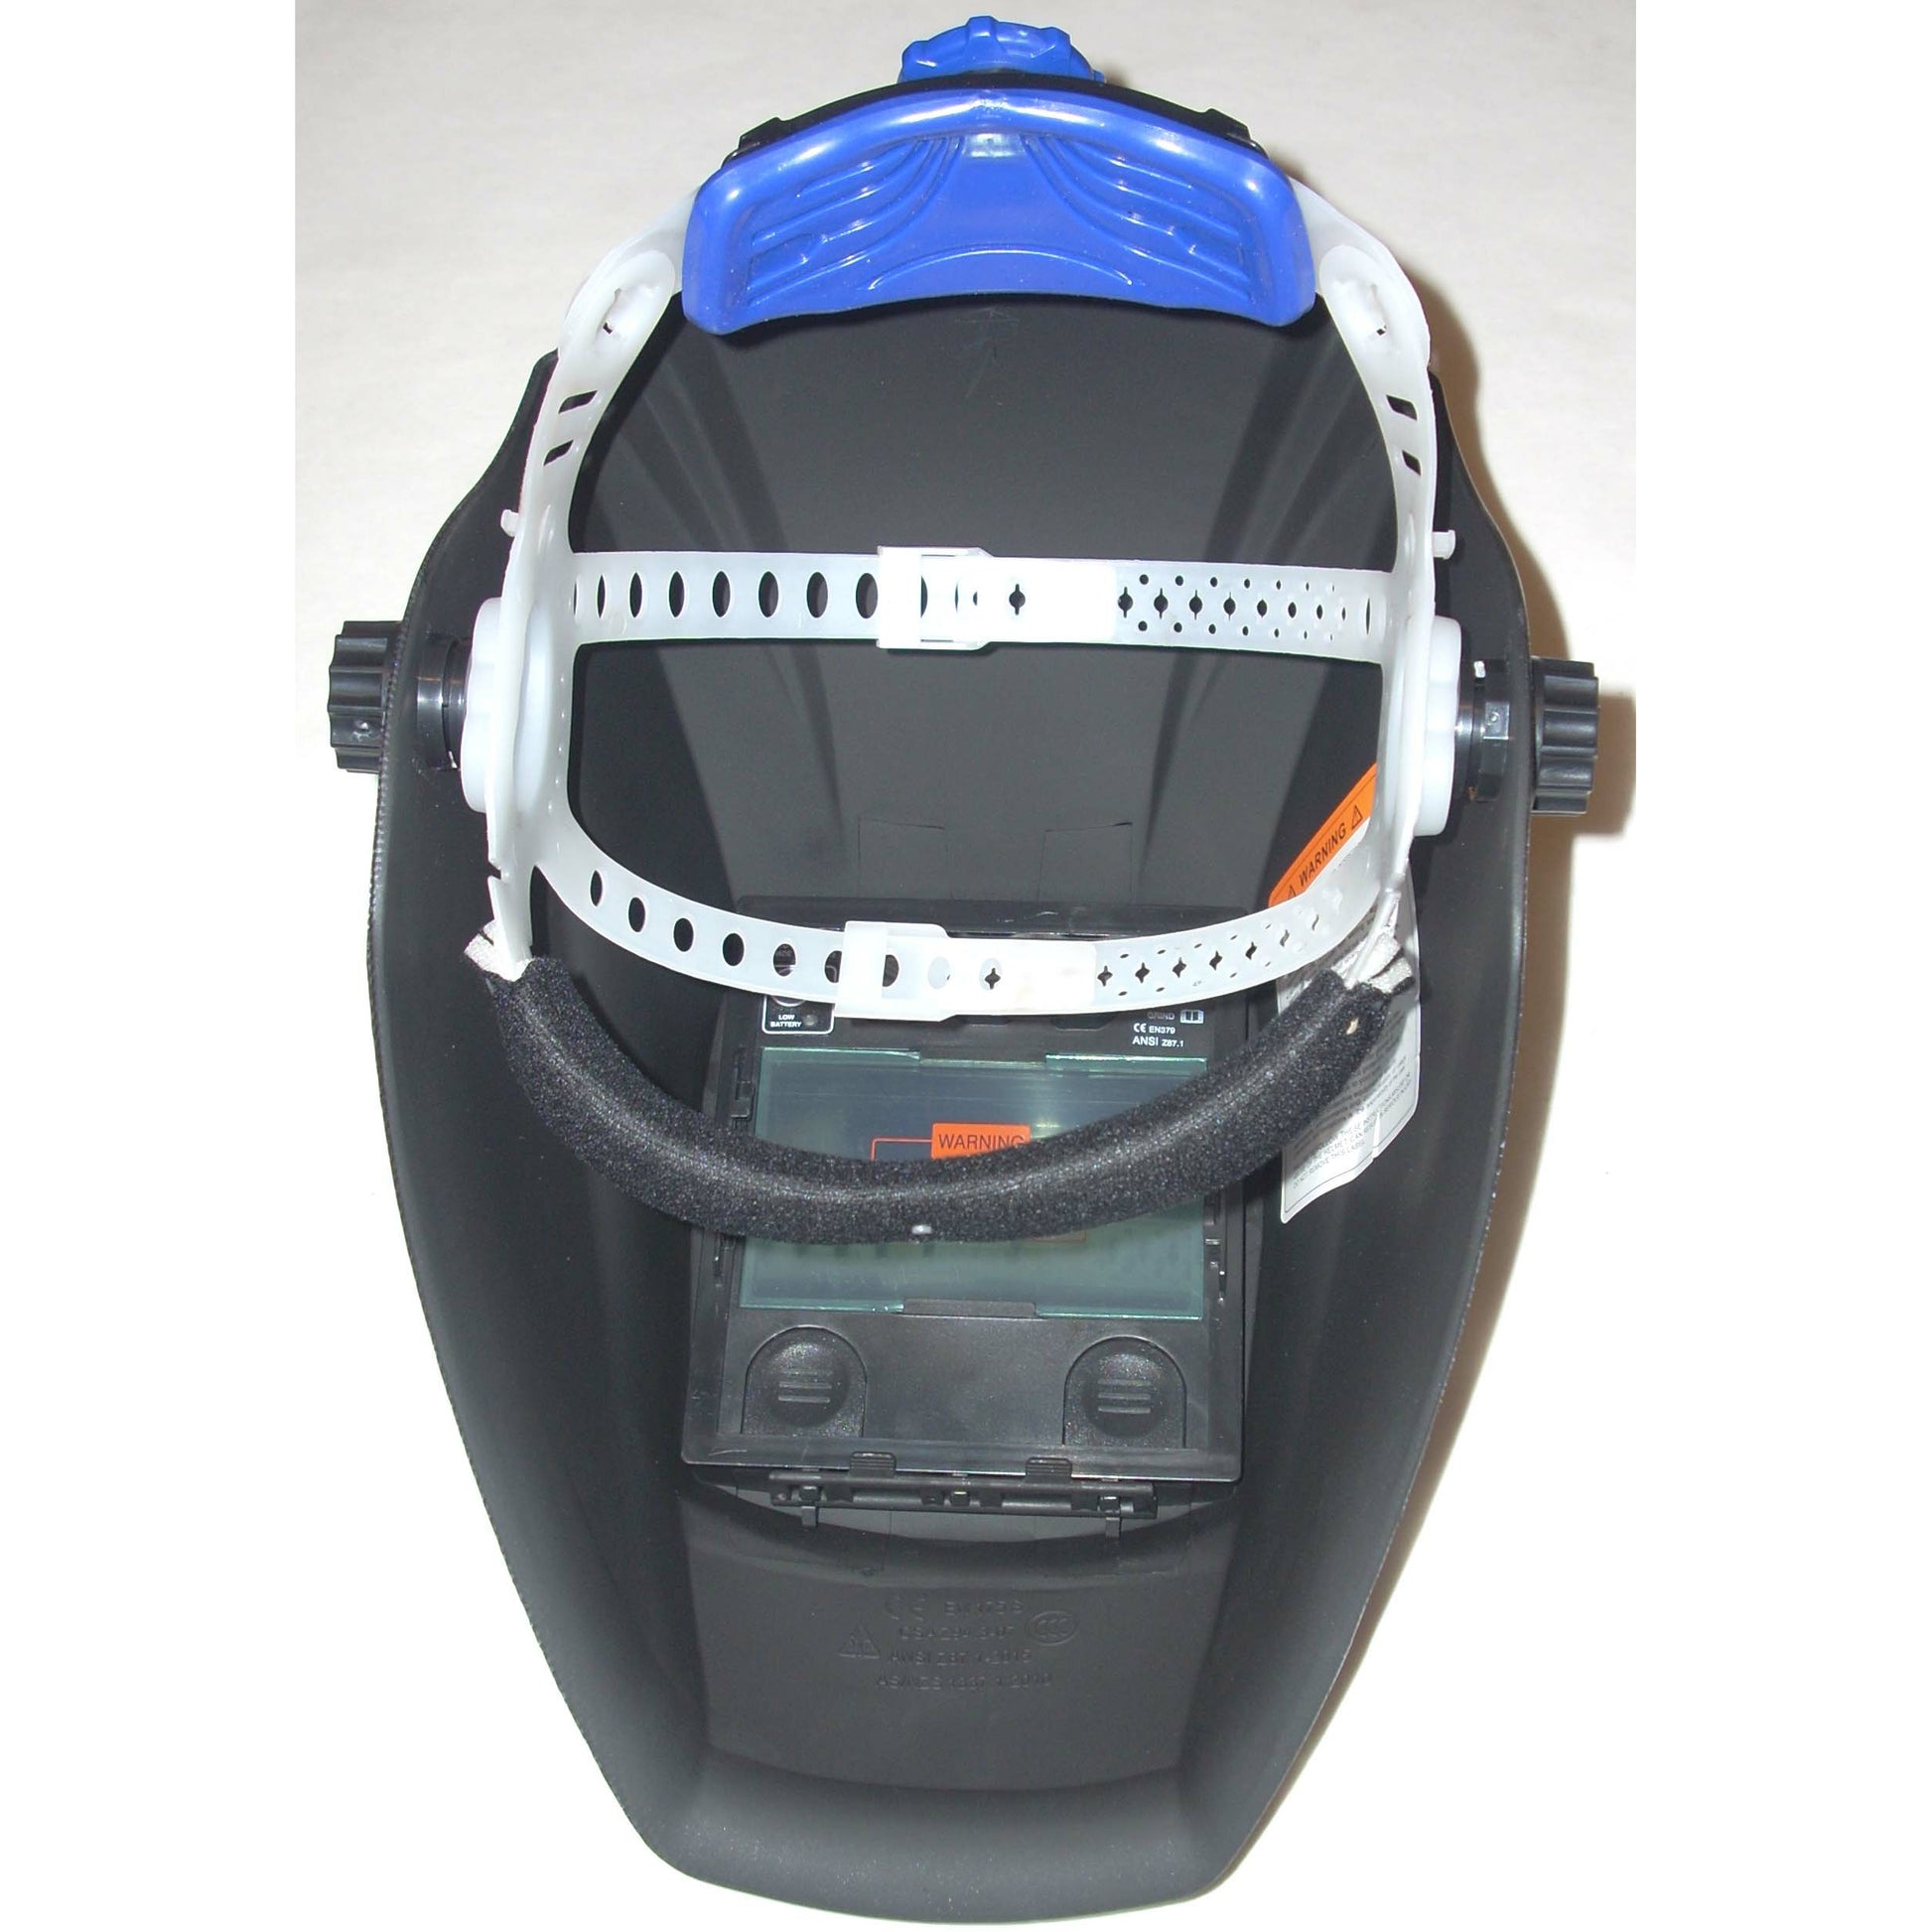 Maroon Auto Darkening Helmet Variable Shade Solar & Battery Powered - ATL Welding Supply